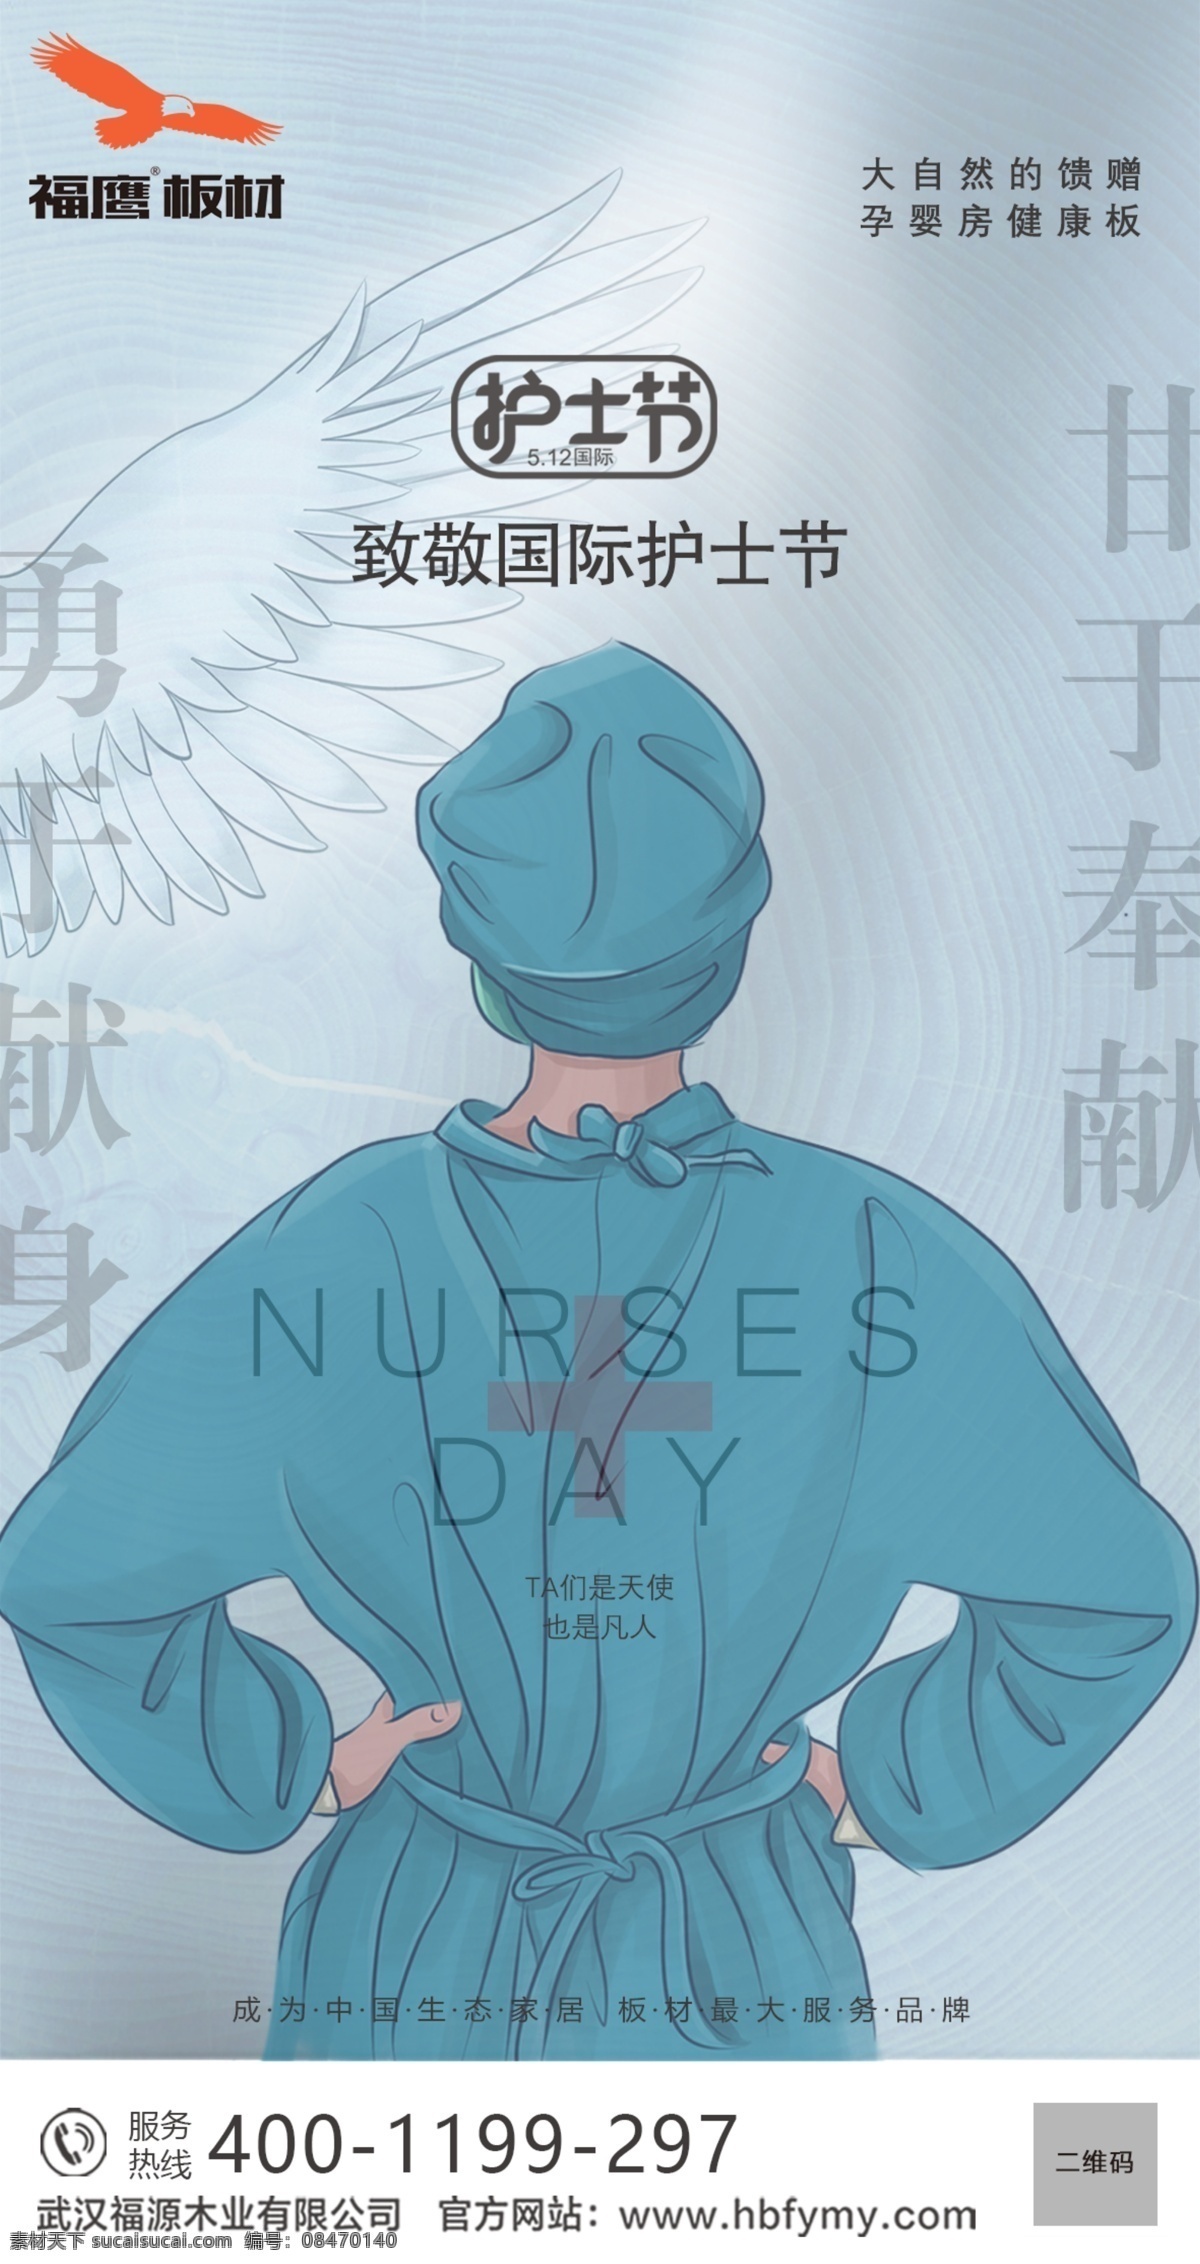 512护士日 护士 512护士节 国际护士节 护士节背景 护士节海报 护士人物 致敬白衣天使 护士国际节